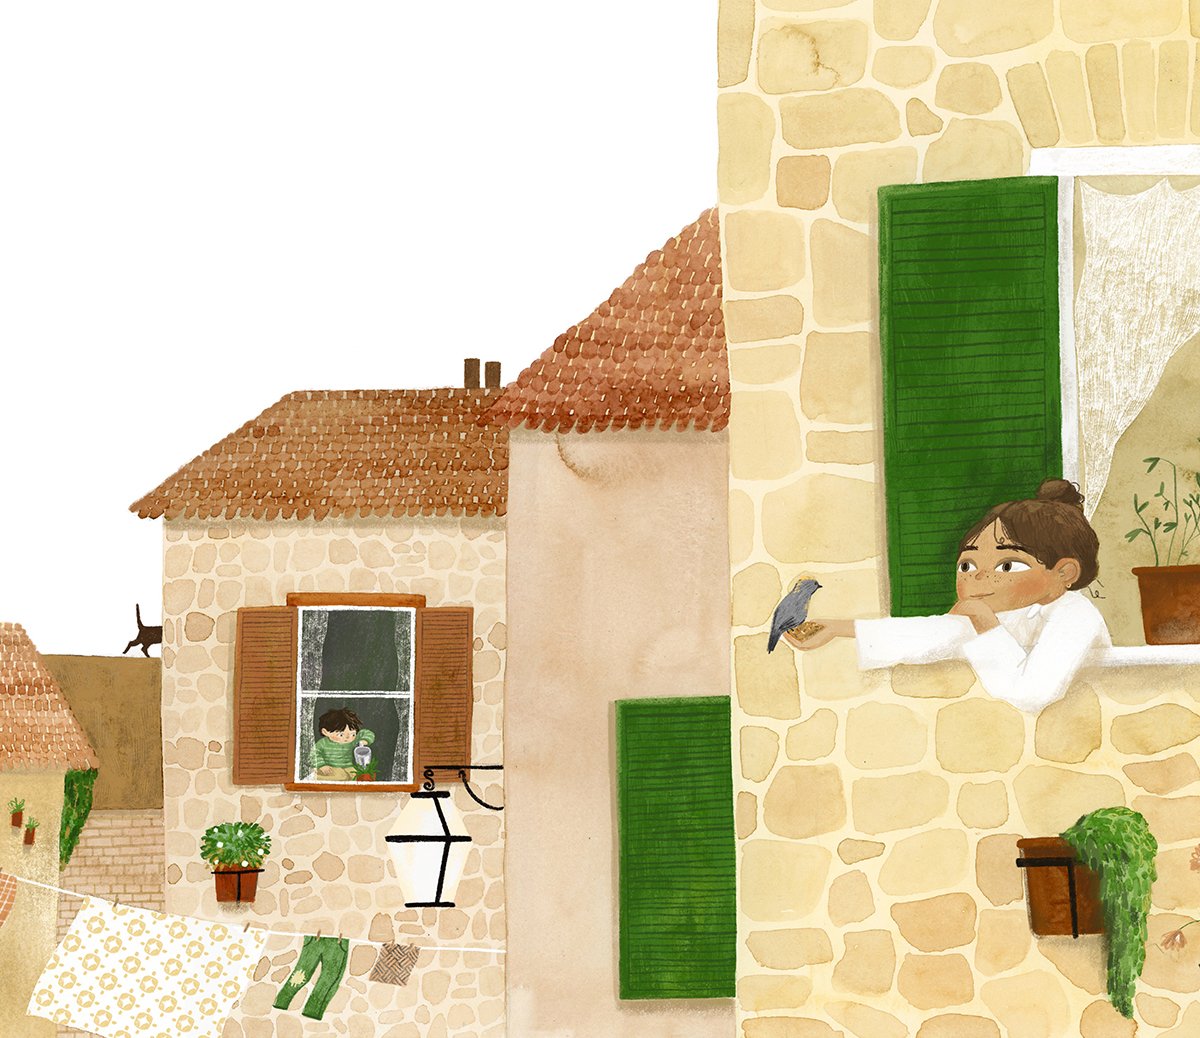 kitty-harris-window-illustration.jpg